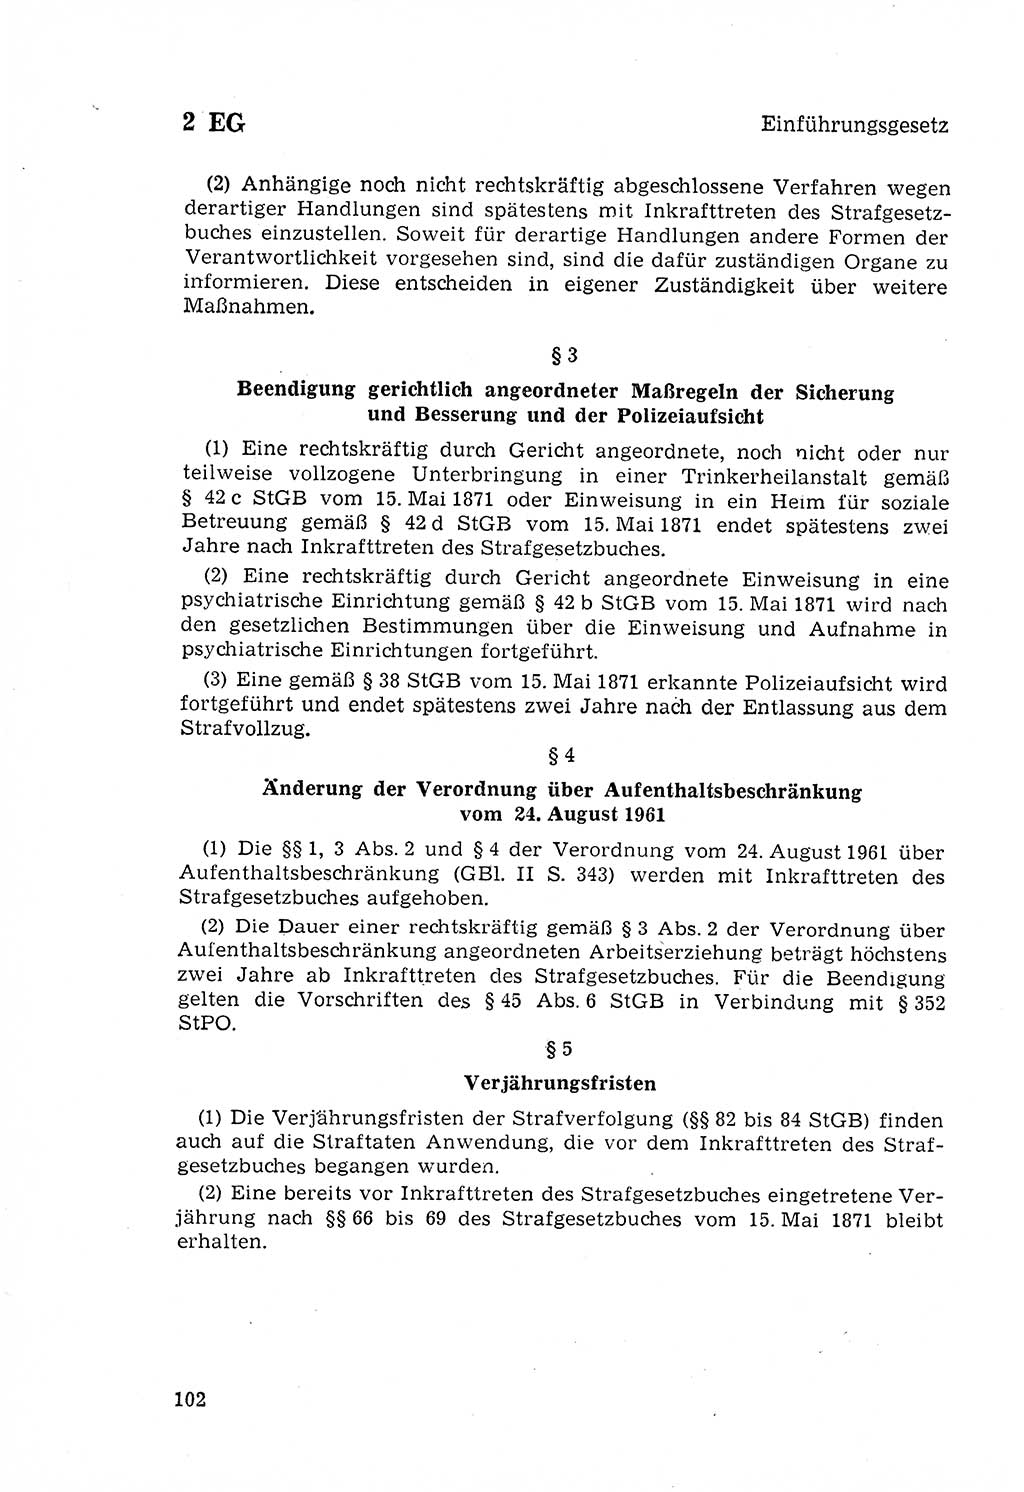 Strafgesetzbuch (StGB) der Deutschen Demokratischen Republik (DDR) 1968, Seite 102 (StGB DDR 1968, S. 102)